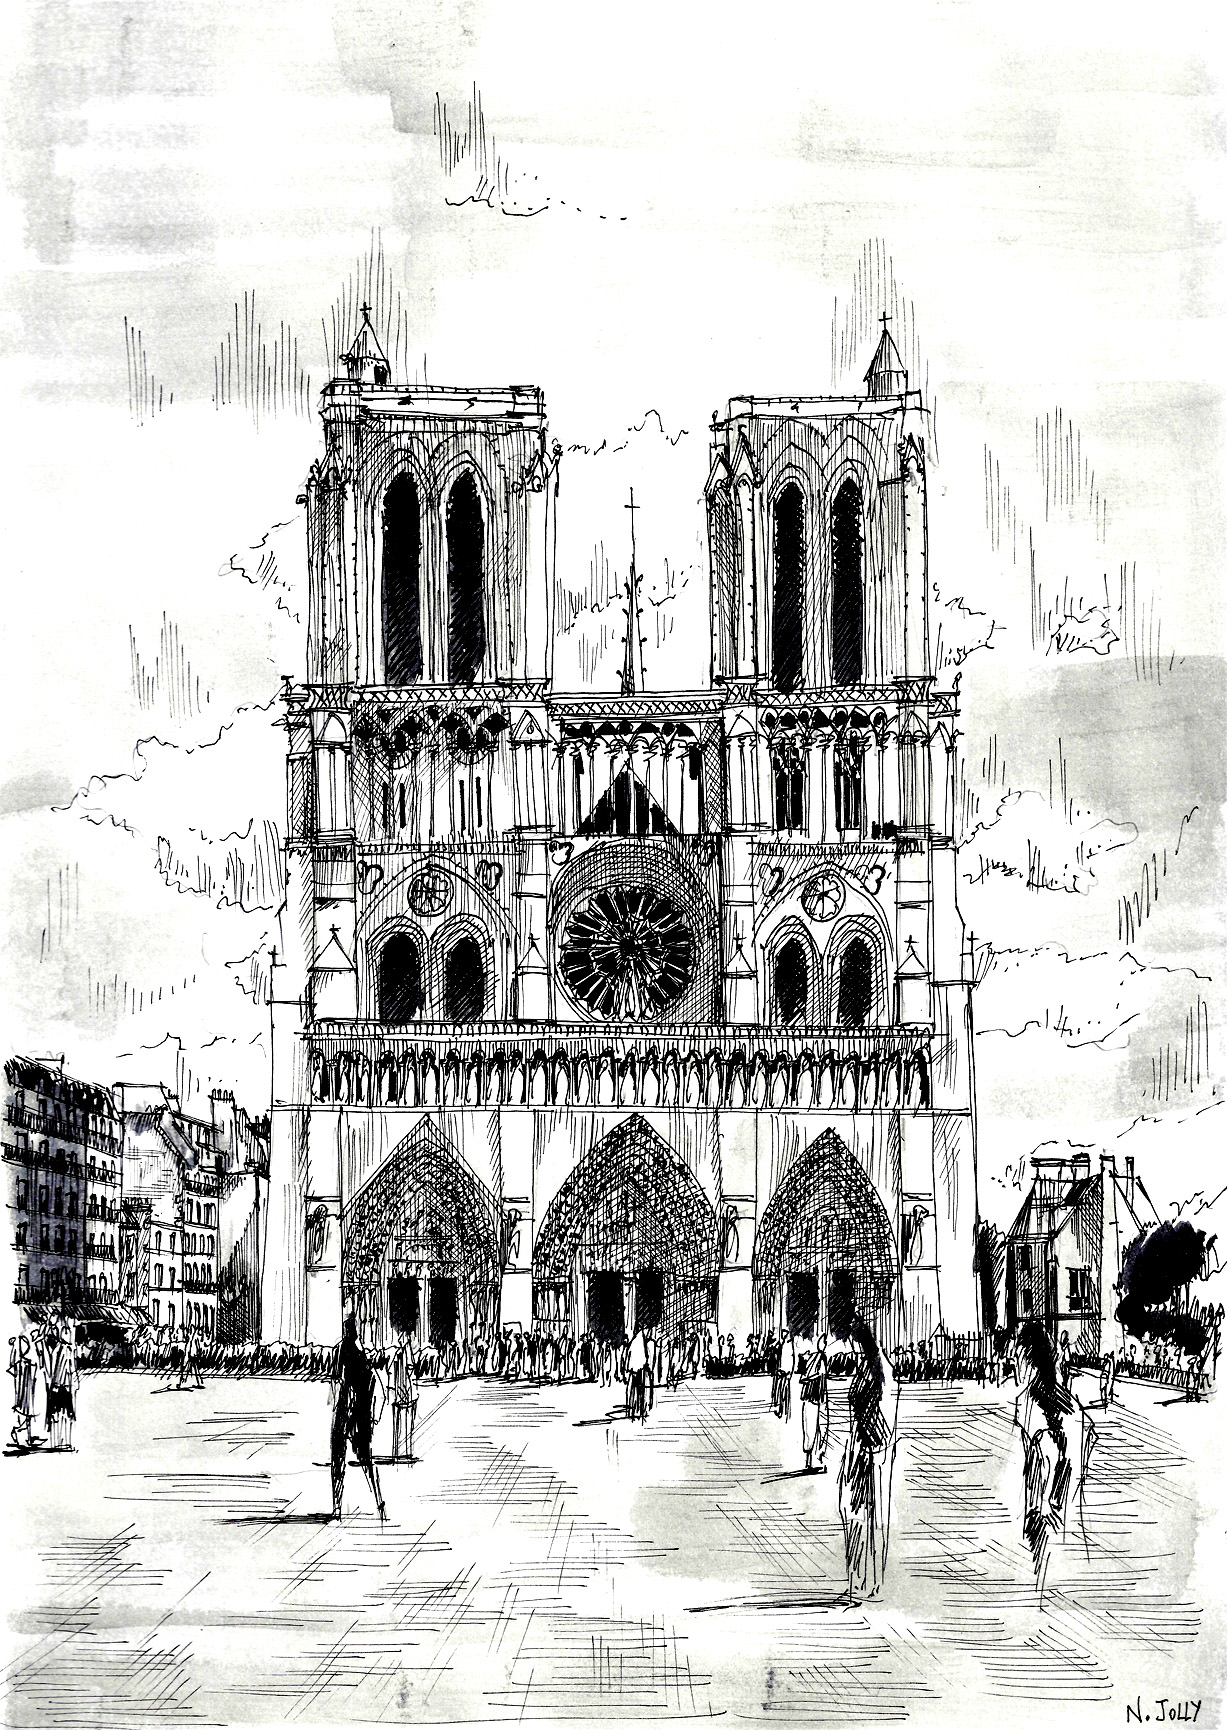 Bela página de desenho da Notre Dame de Paris, colorir pormenor por pormenor, ou mesmo pintá-la!